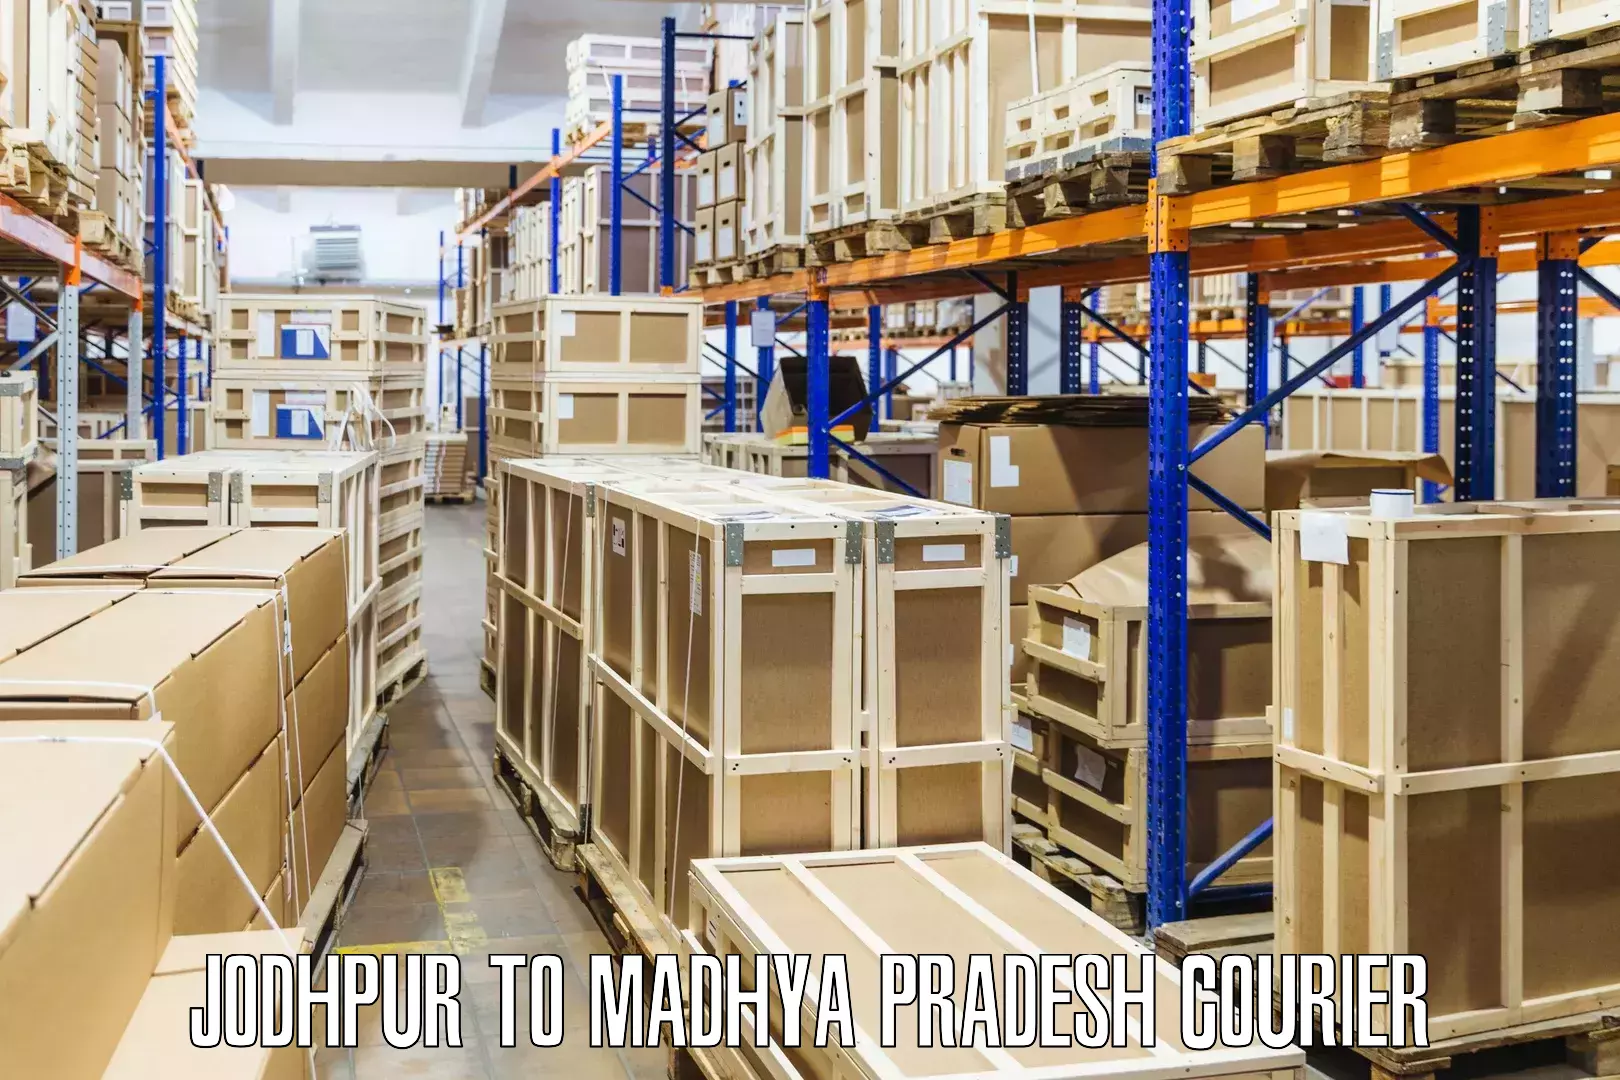 Courier service comparison Jodhpur to Sehore